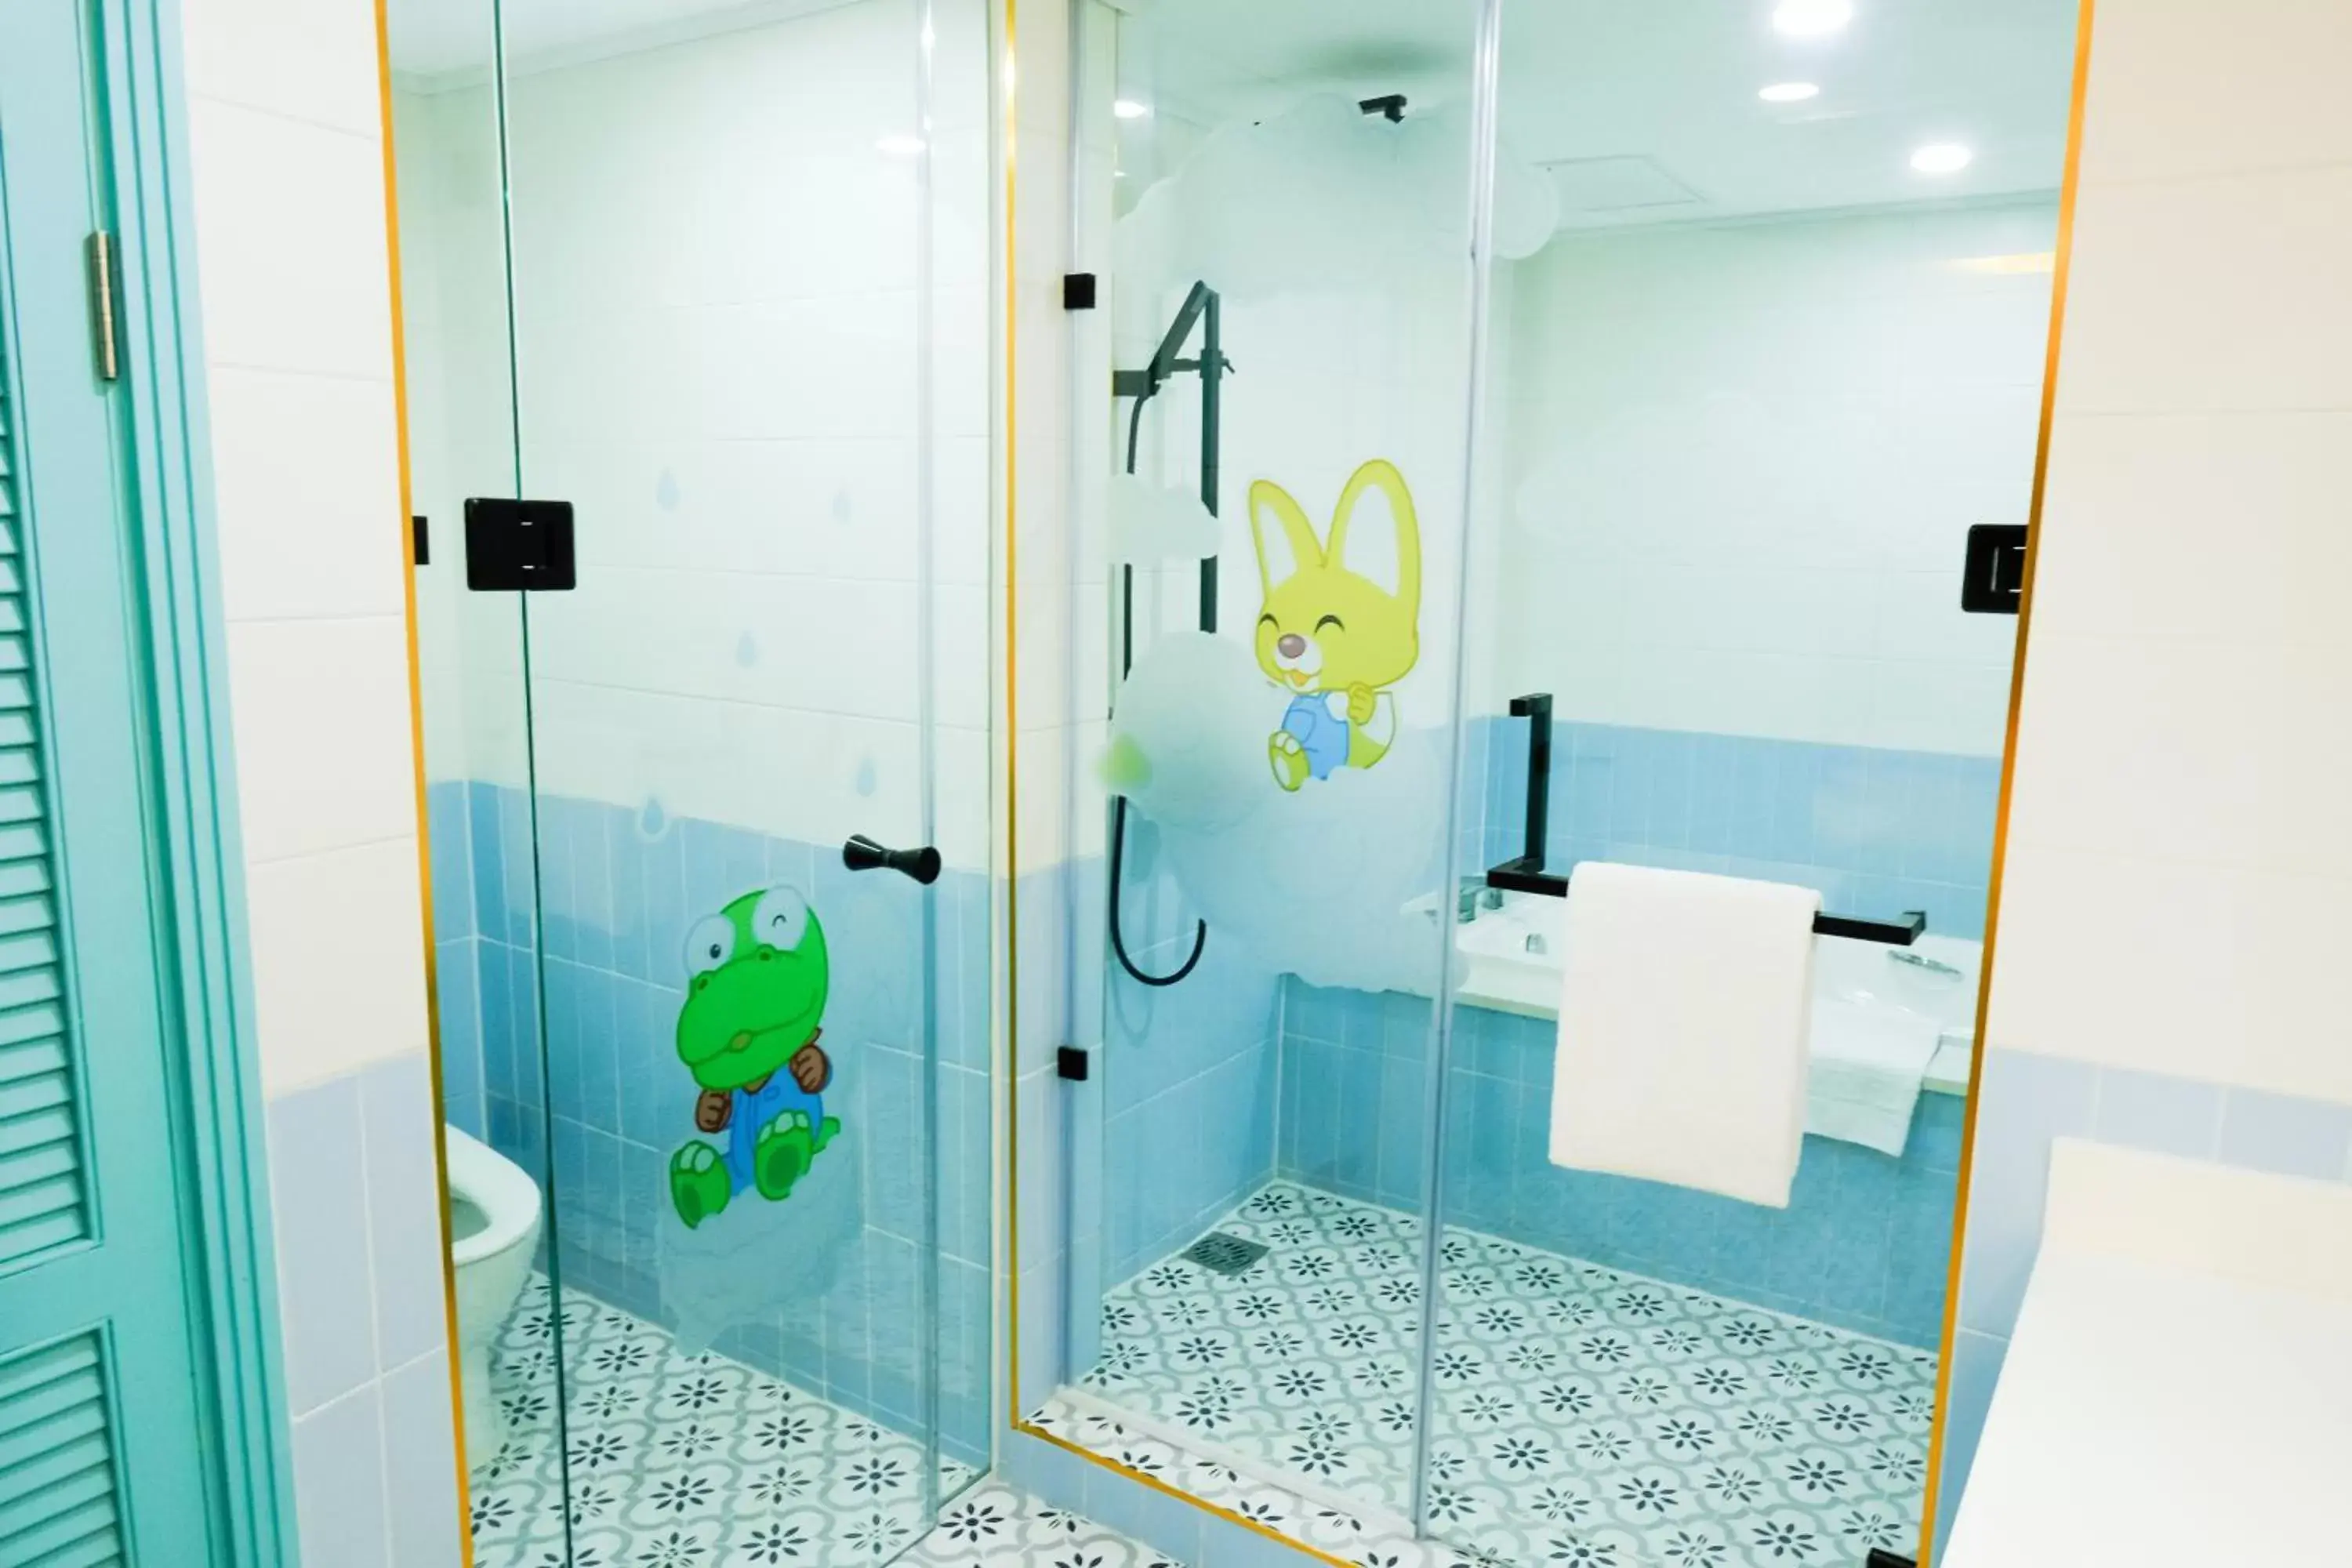 Toilet, Bathroom in Jpark Island Resort & Waterpark Cebu